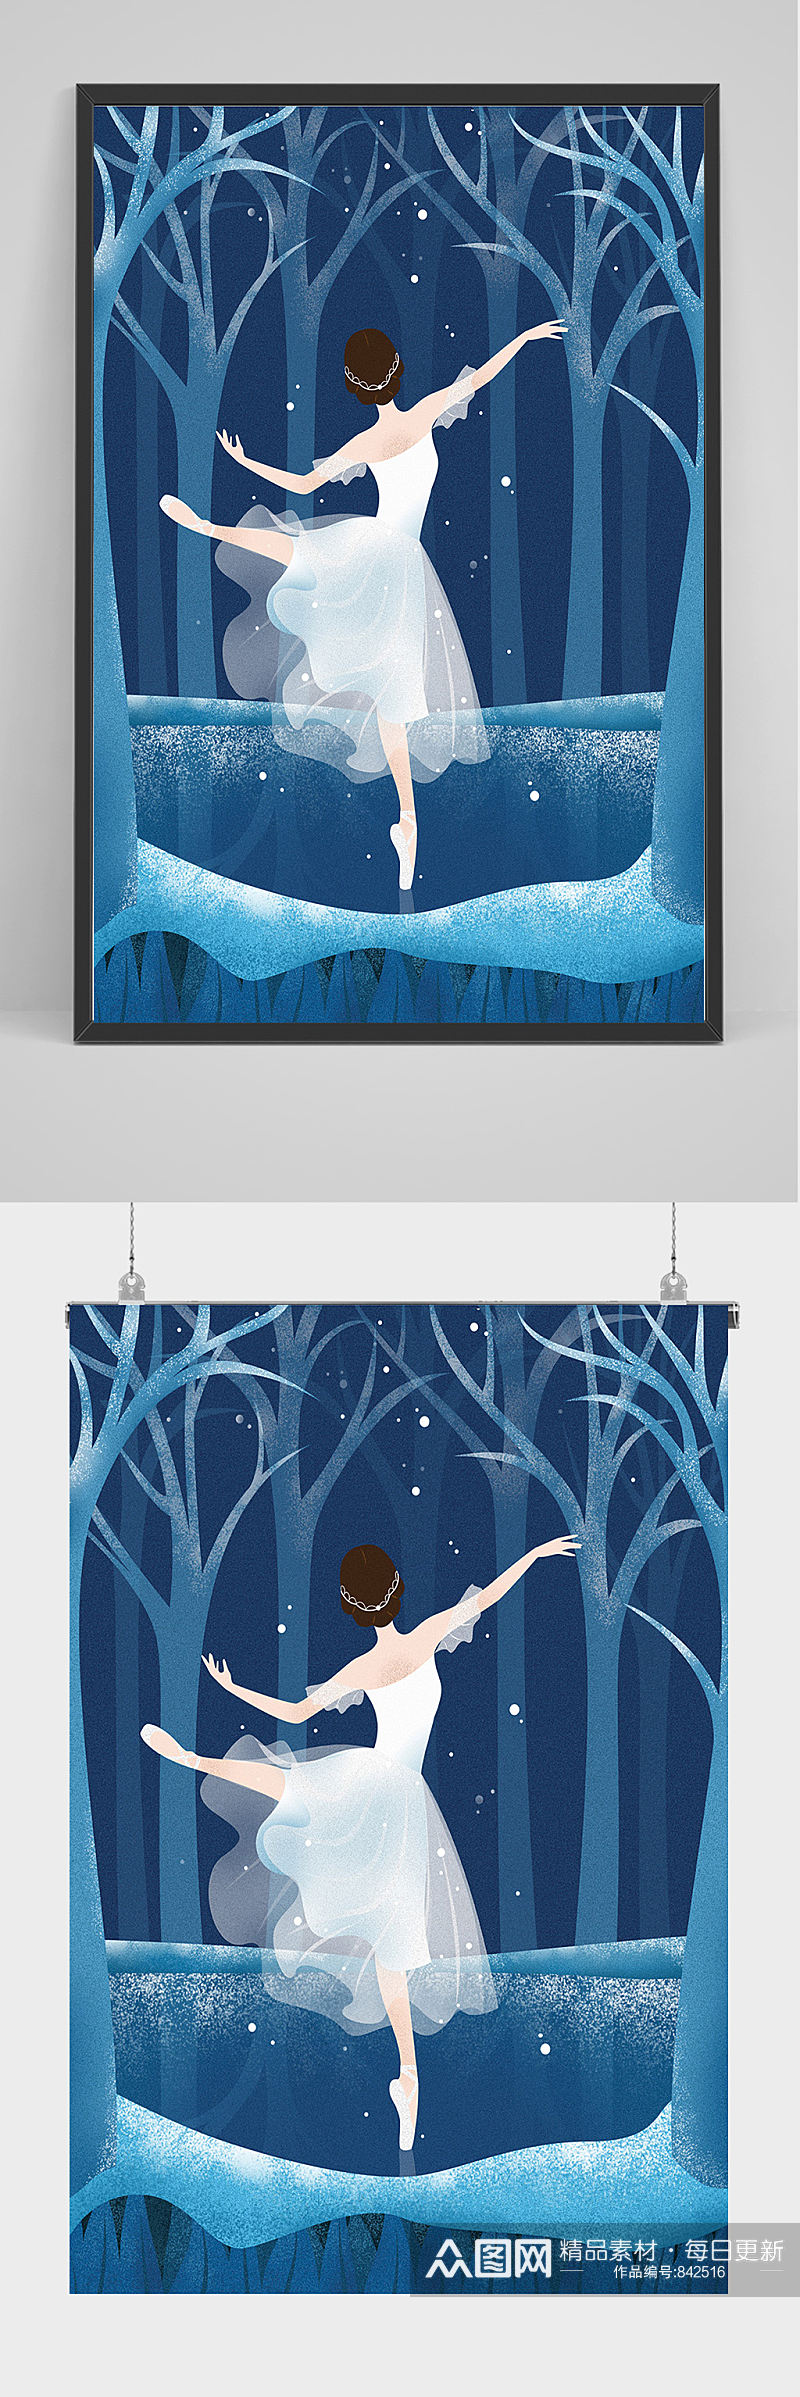 森林中跳芭蕾的女子插画设计素材